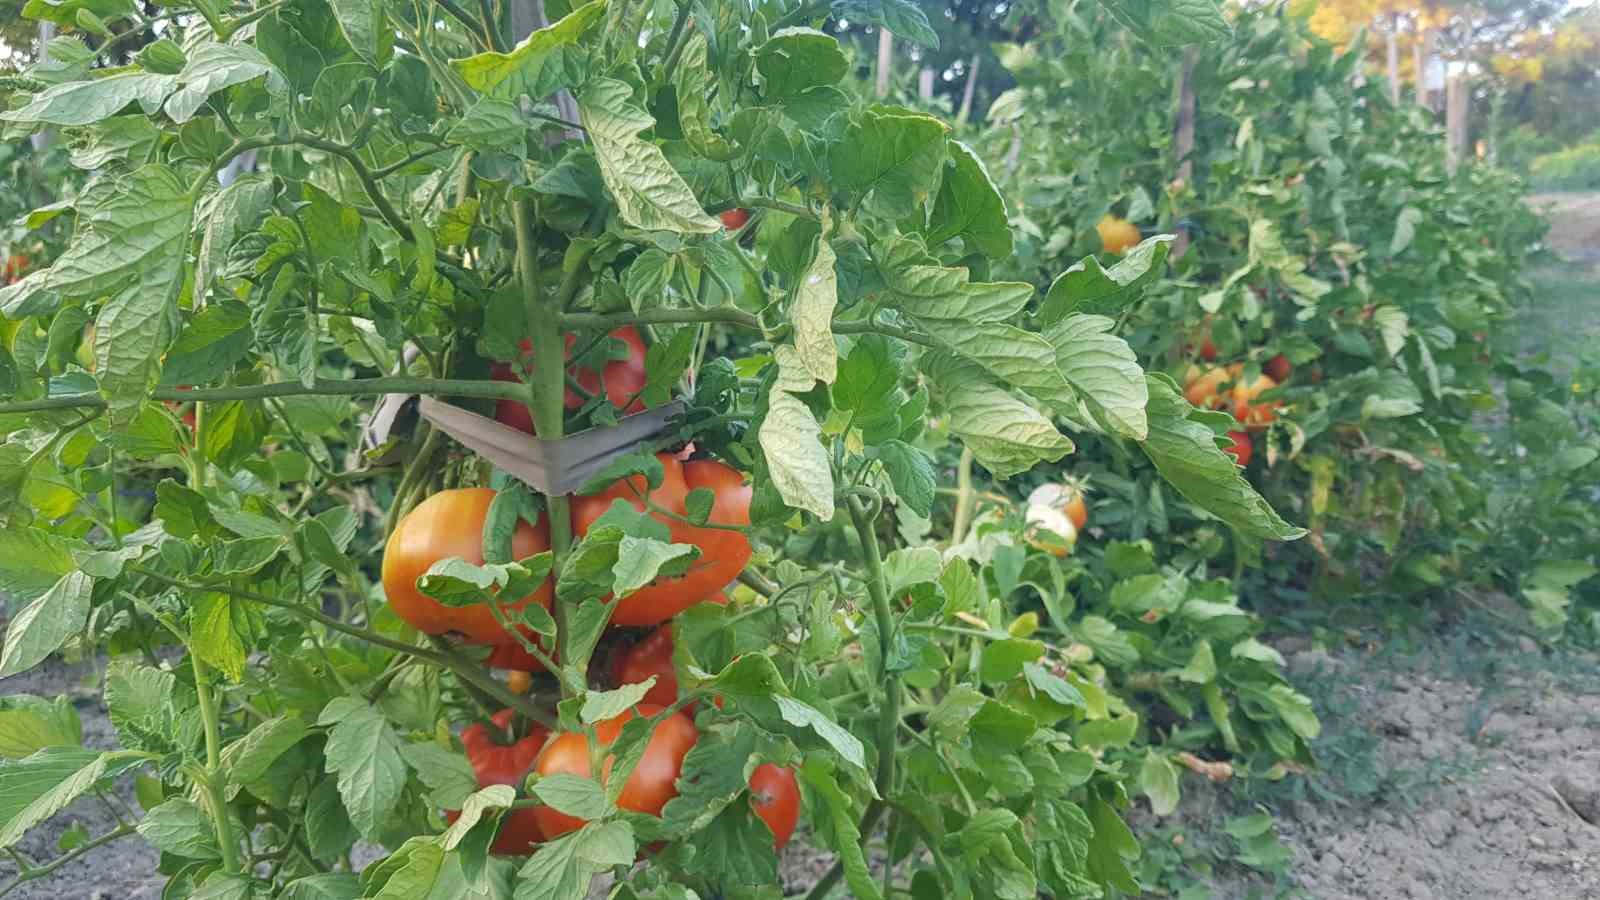 Lezzetiyle vazgeçilmez olan coğrafi işaretli maniye domatesinde hasat sürüyor